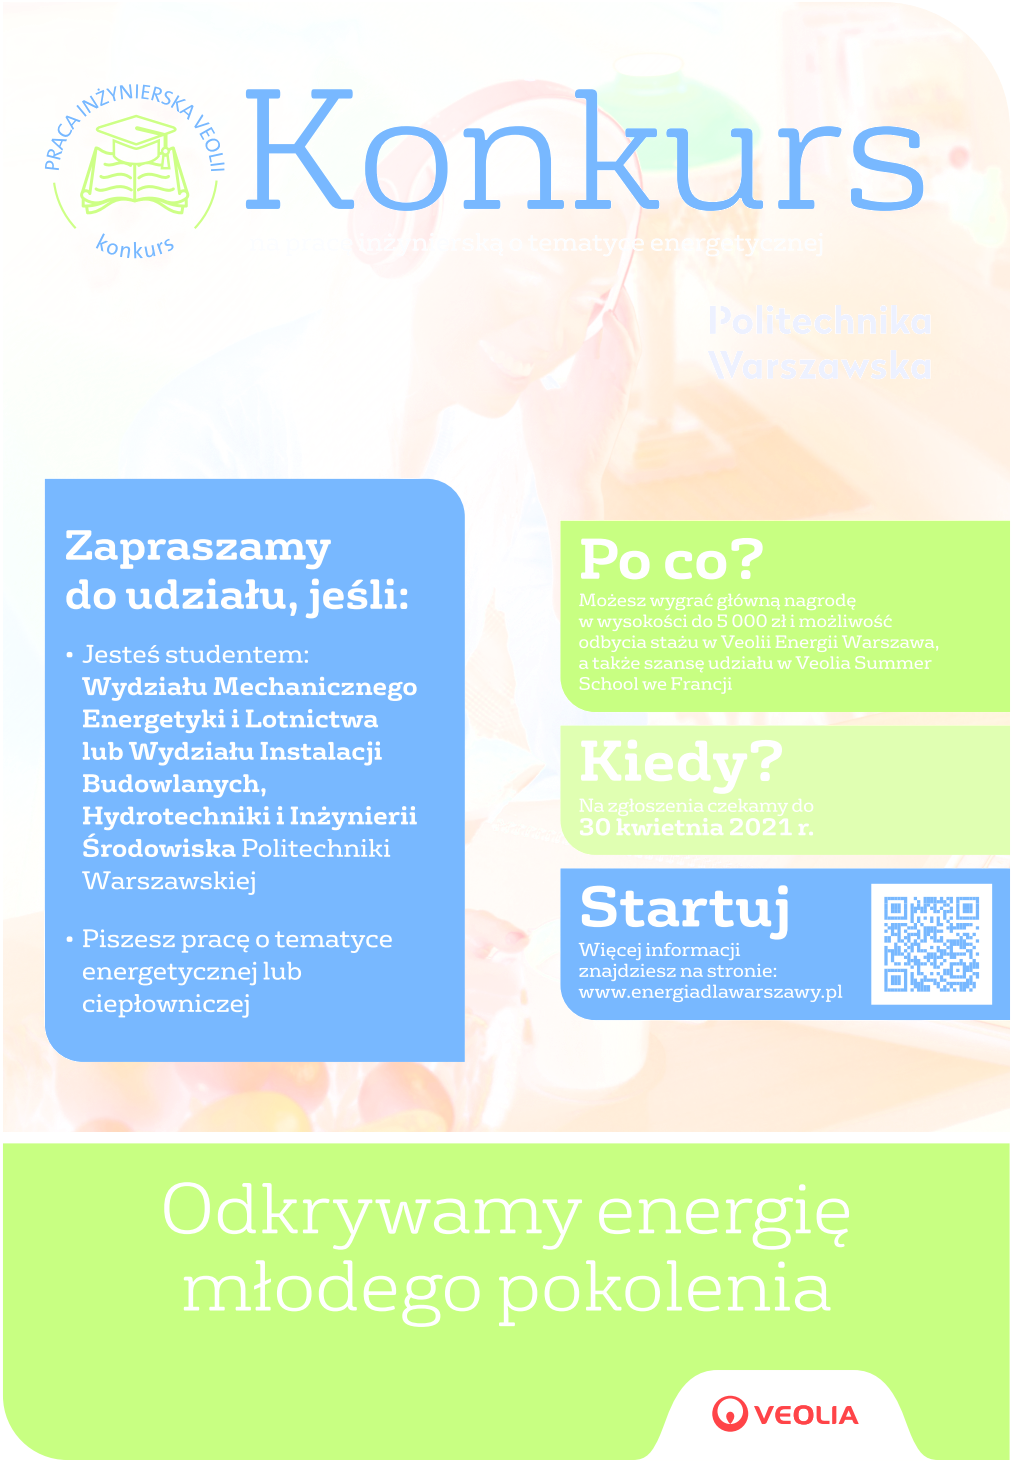 Plakat - praca inżynierska 2021 Veolia Energia Warszawa S.A